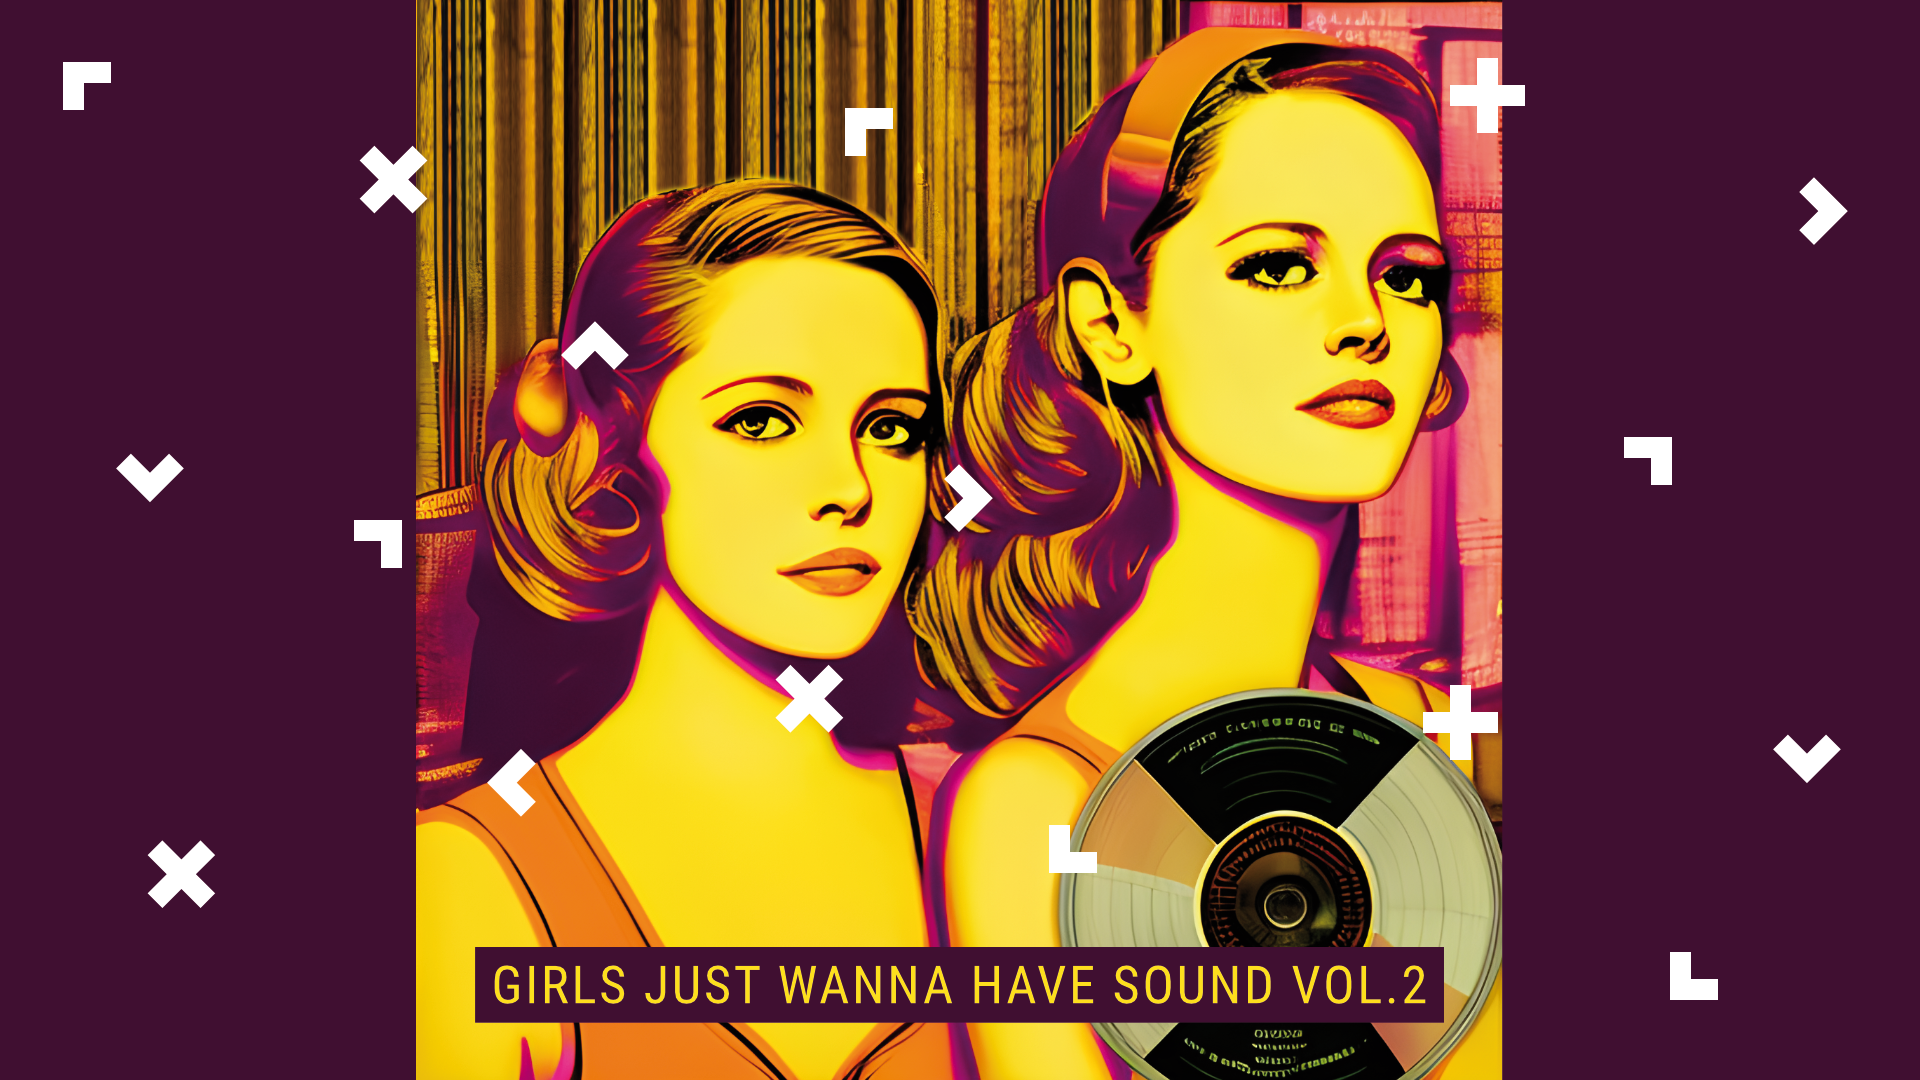 Grafika z portretami dwóch kobiet. W prawym dolnym rogu jest płyta winylowa. Napis: Girls just wanna have sound.